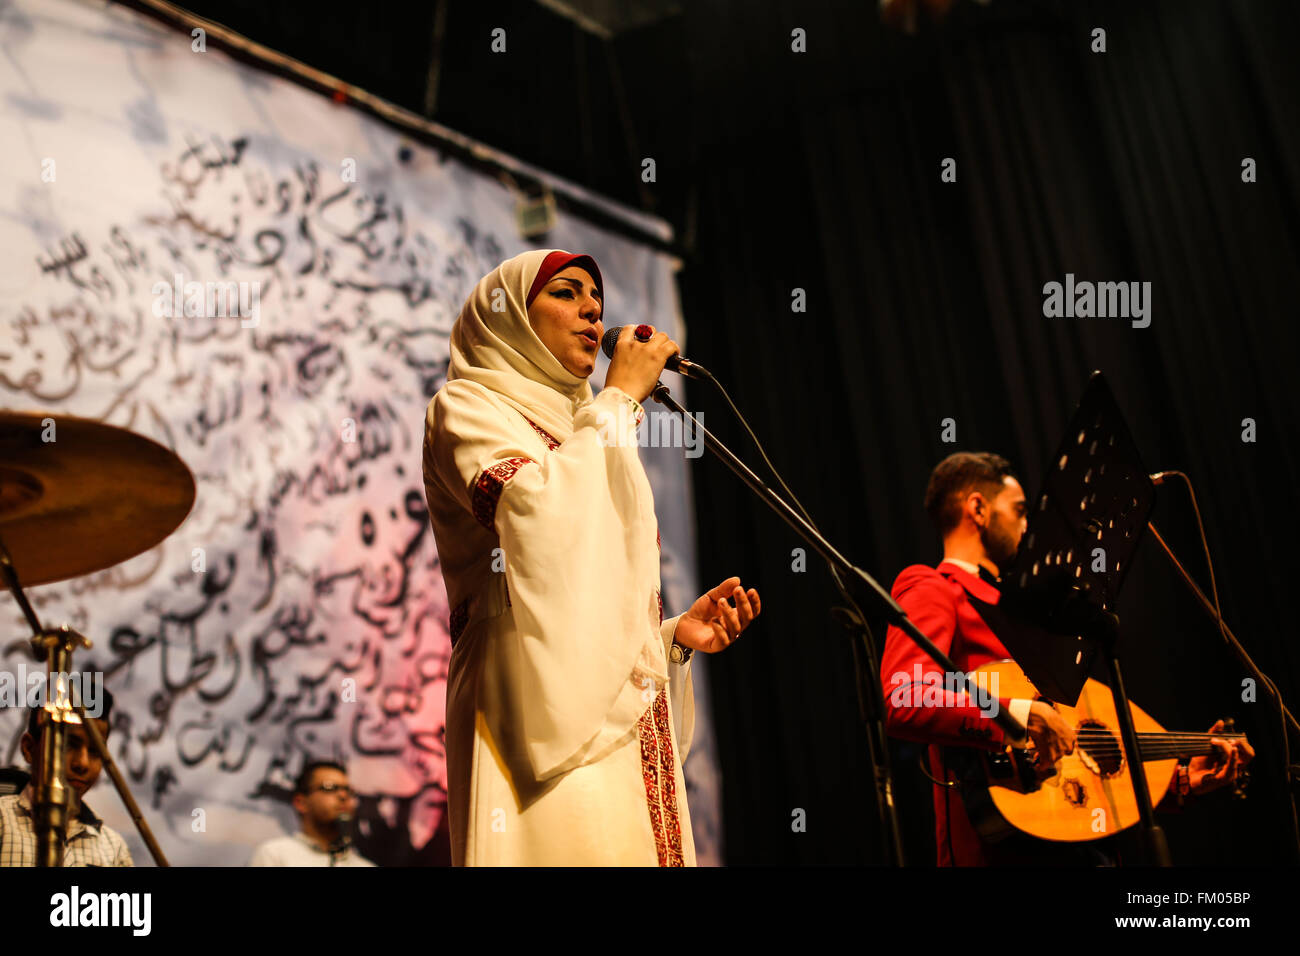 Gaza, la Palestine. 10 Mar, 2016. Les membres palestiniens de l'Dawaween music band, jouer des chansons oriental traditionnel pendant un héritage musical les concerts dans la ville de Gaza. © Nidal Alwaheidi/Pacific Press/Alamy Live News Banque D'Images